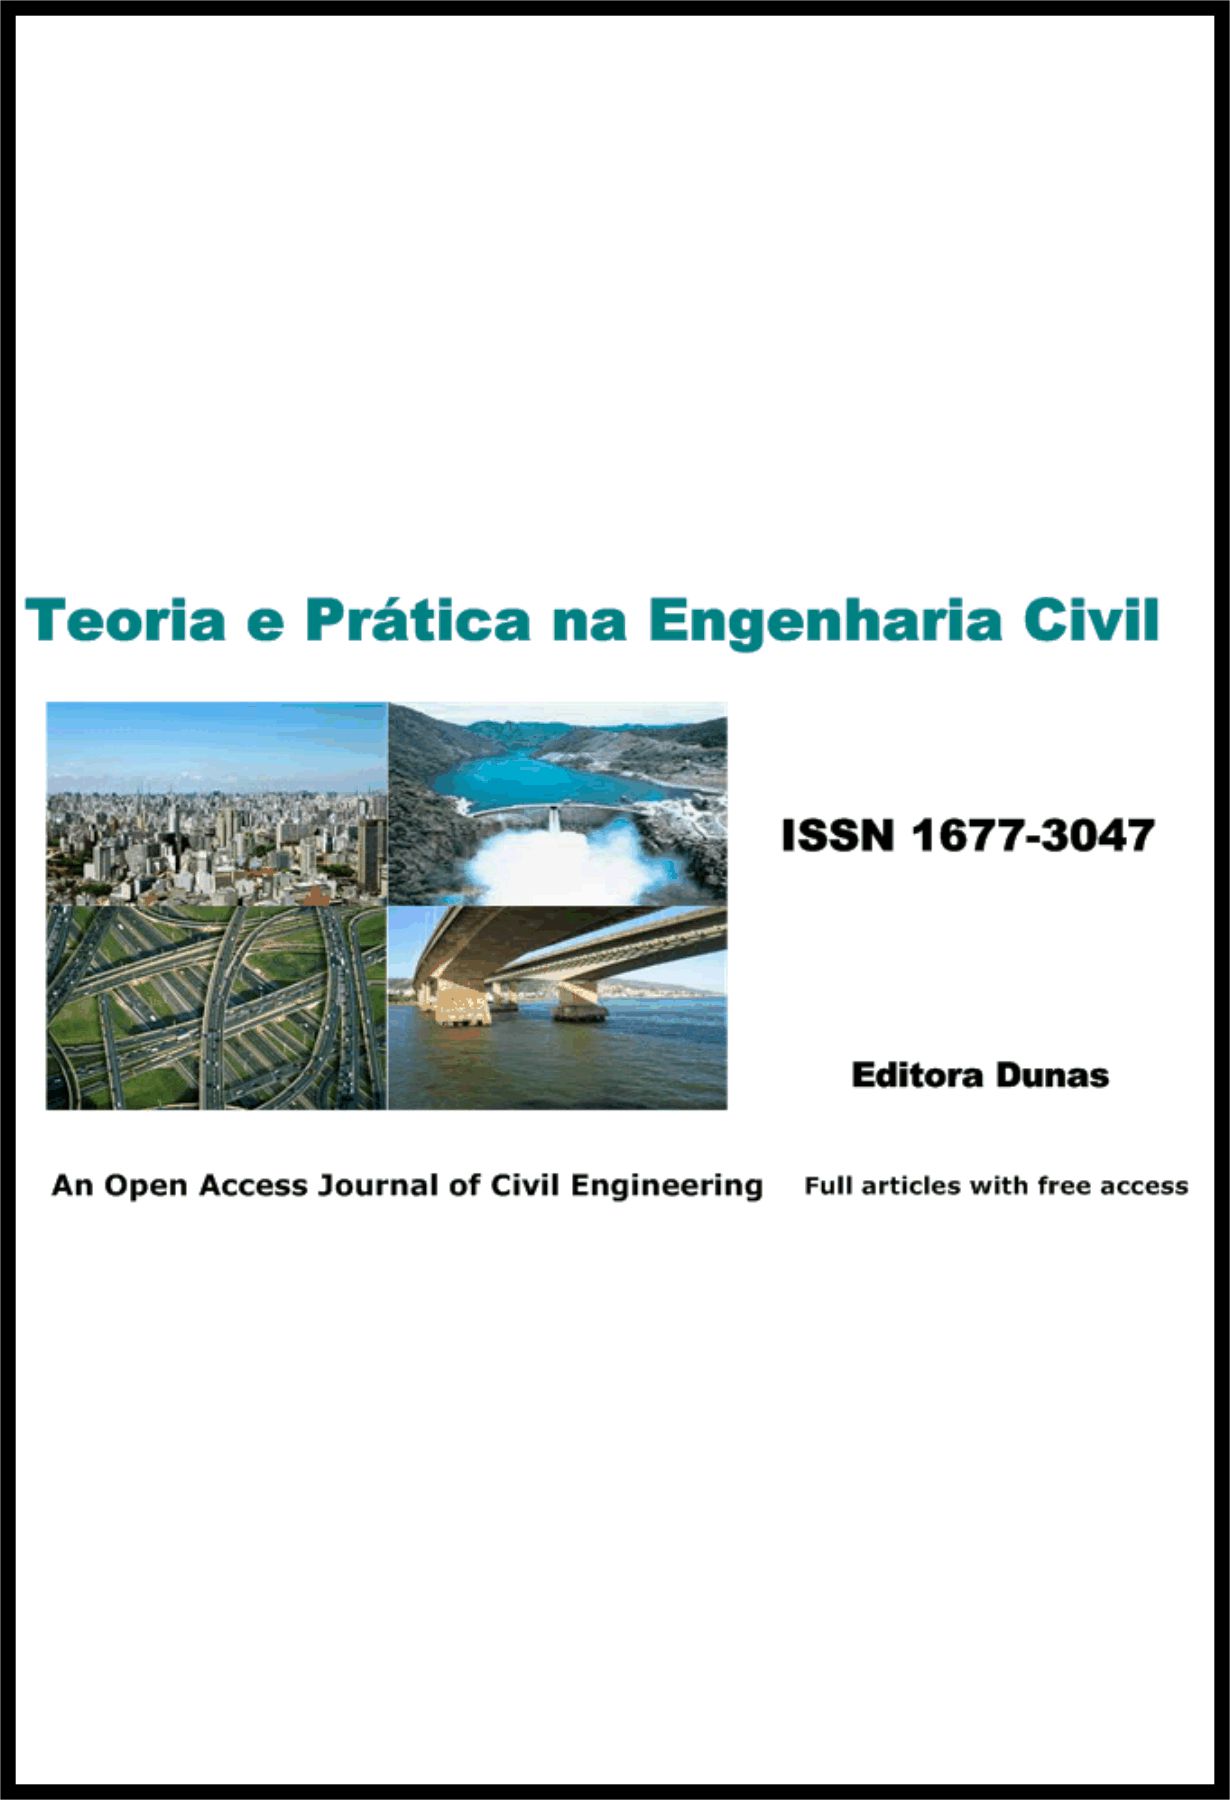 Capa: Revista Teoria e Prática na Engenharia Civil